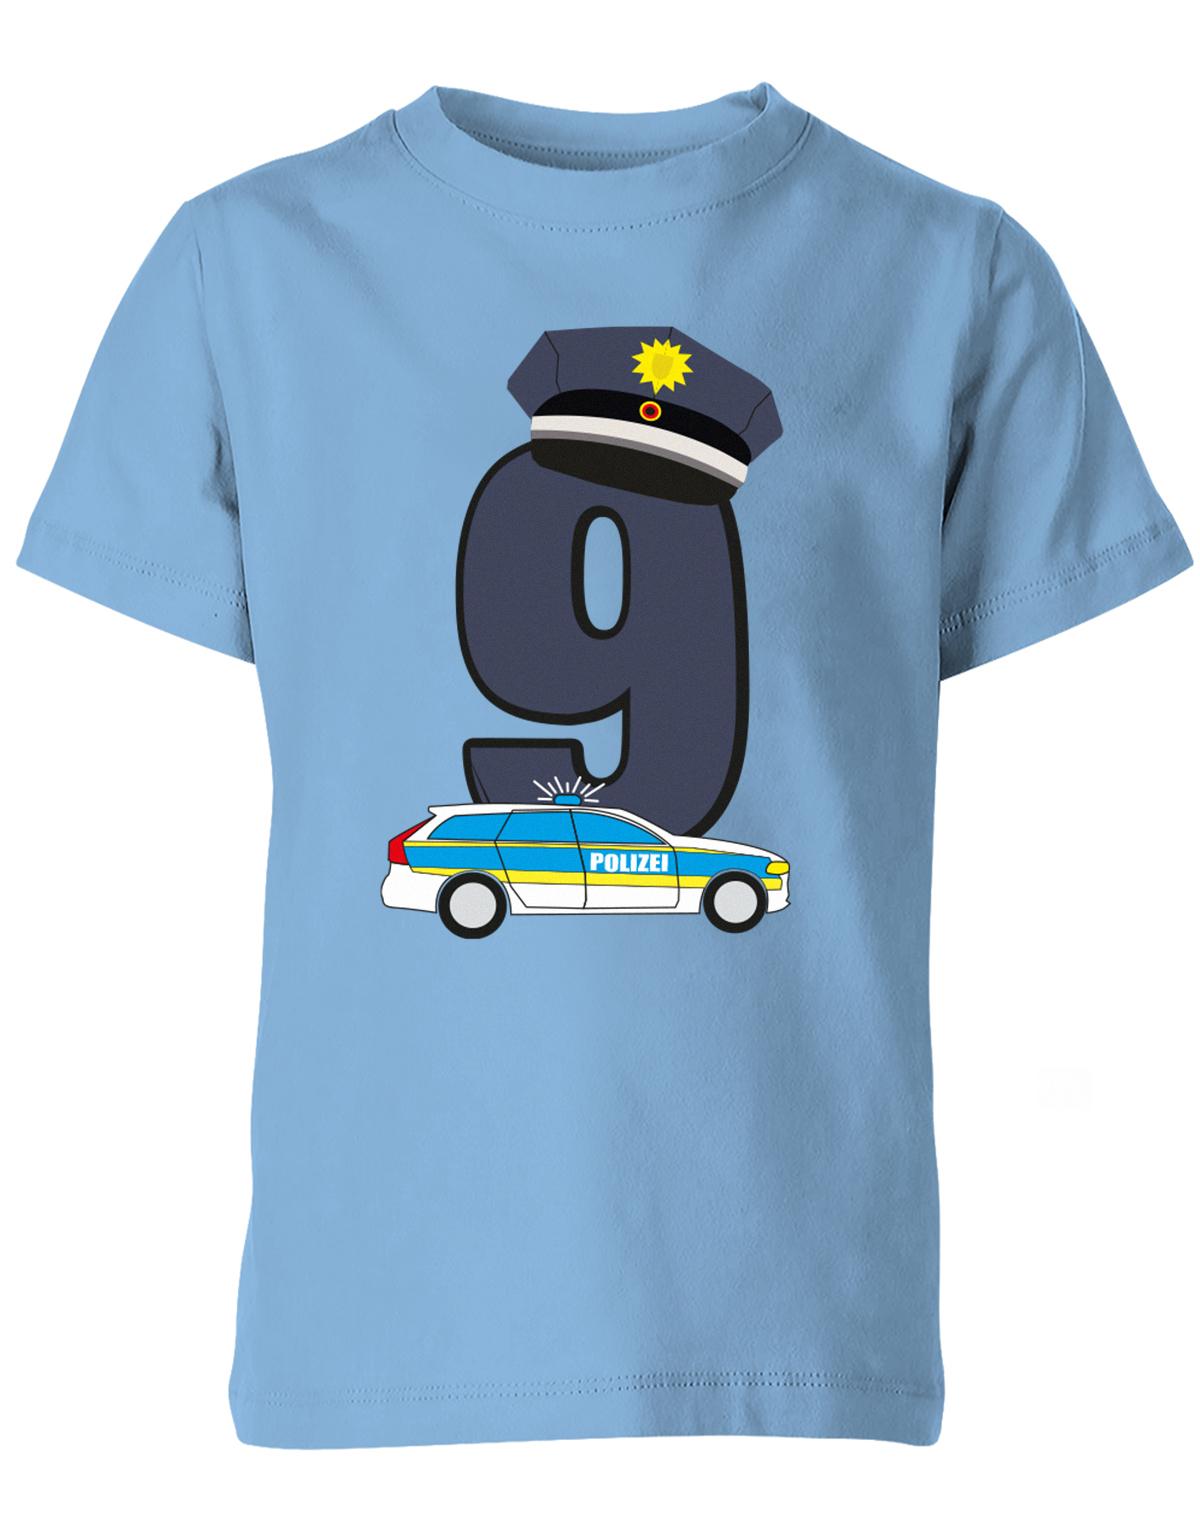 ich-bin-9-polizei-geburtstag-kinder-shirt-hellblau